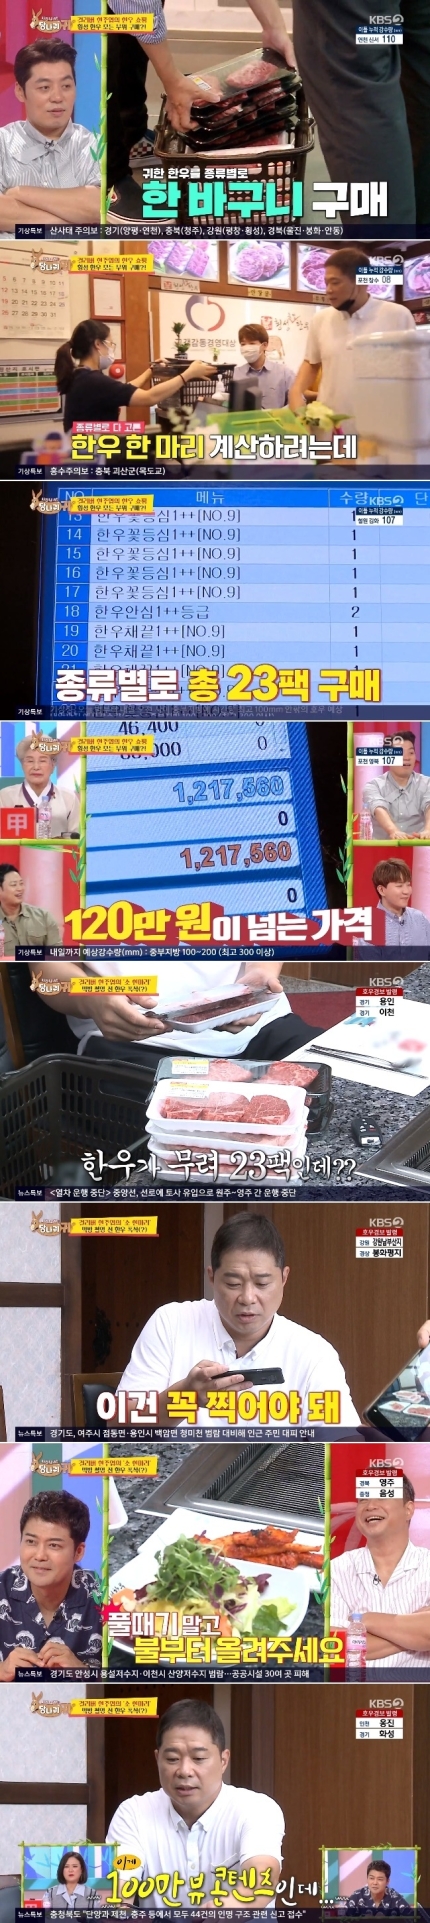 ‘당나귀 귀’ 현주엽, 점심으로 소고기 121만 원 어치 ‘먹방’ 